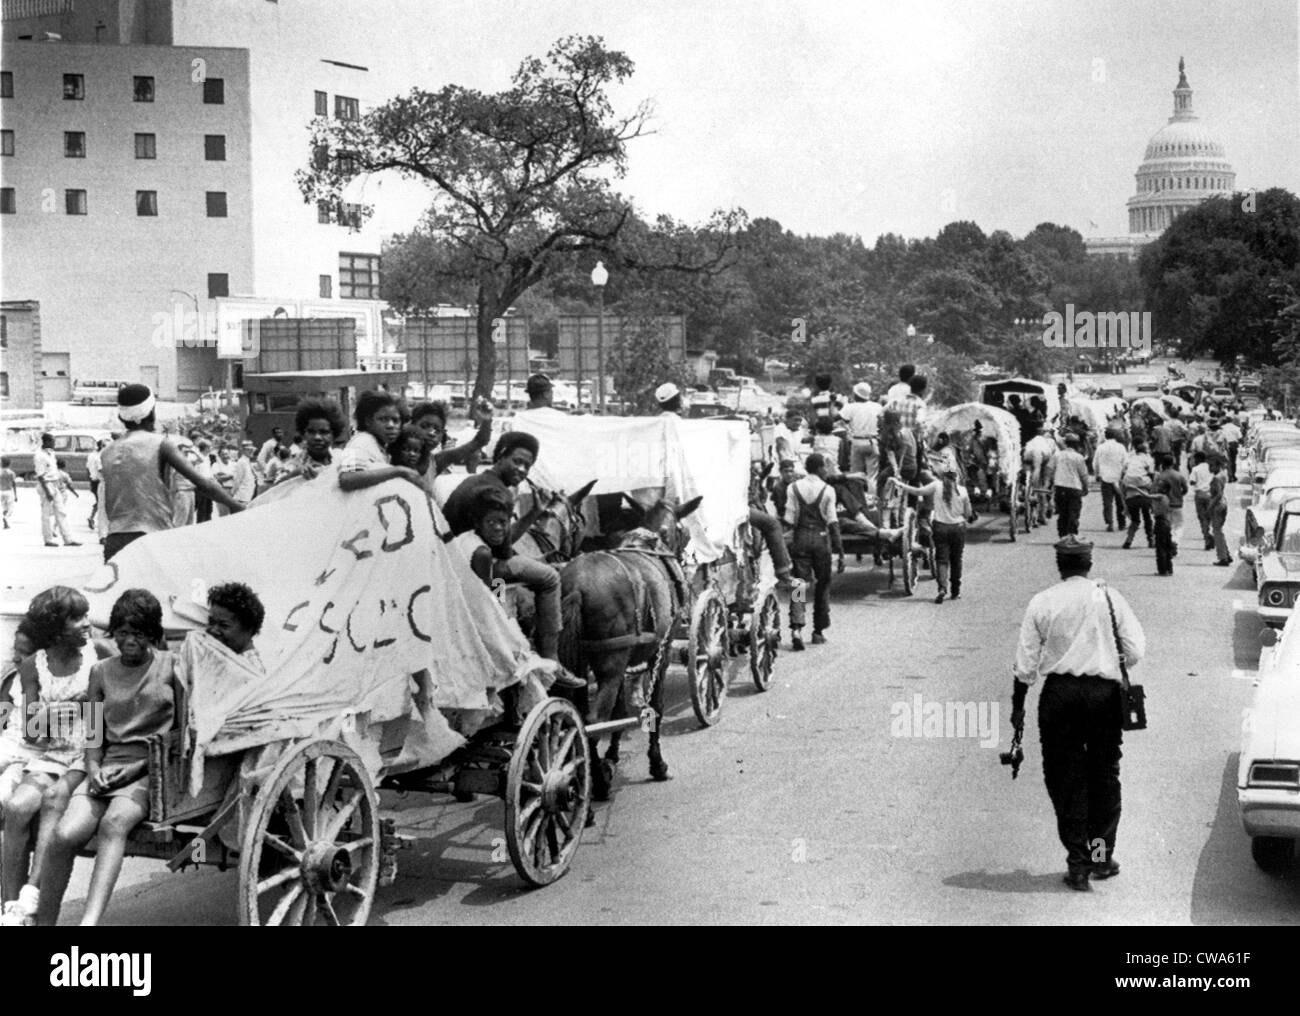 25/06/68 WASHINGTON : La mule train qui était un symbole de la Poor People's Campaign finalement franchi la rivière à Washington Banque D'Images